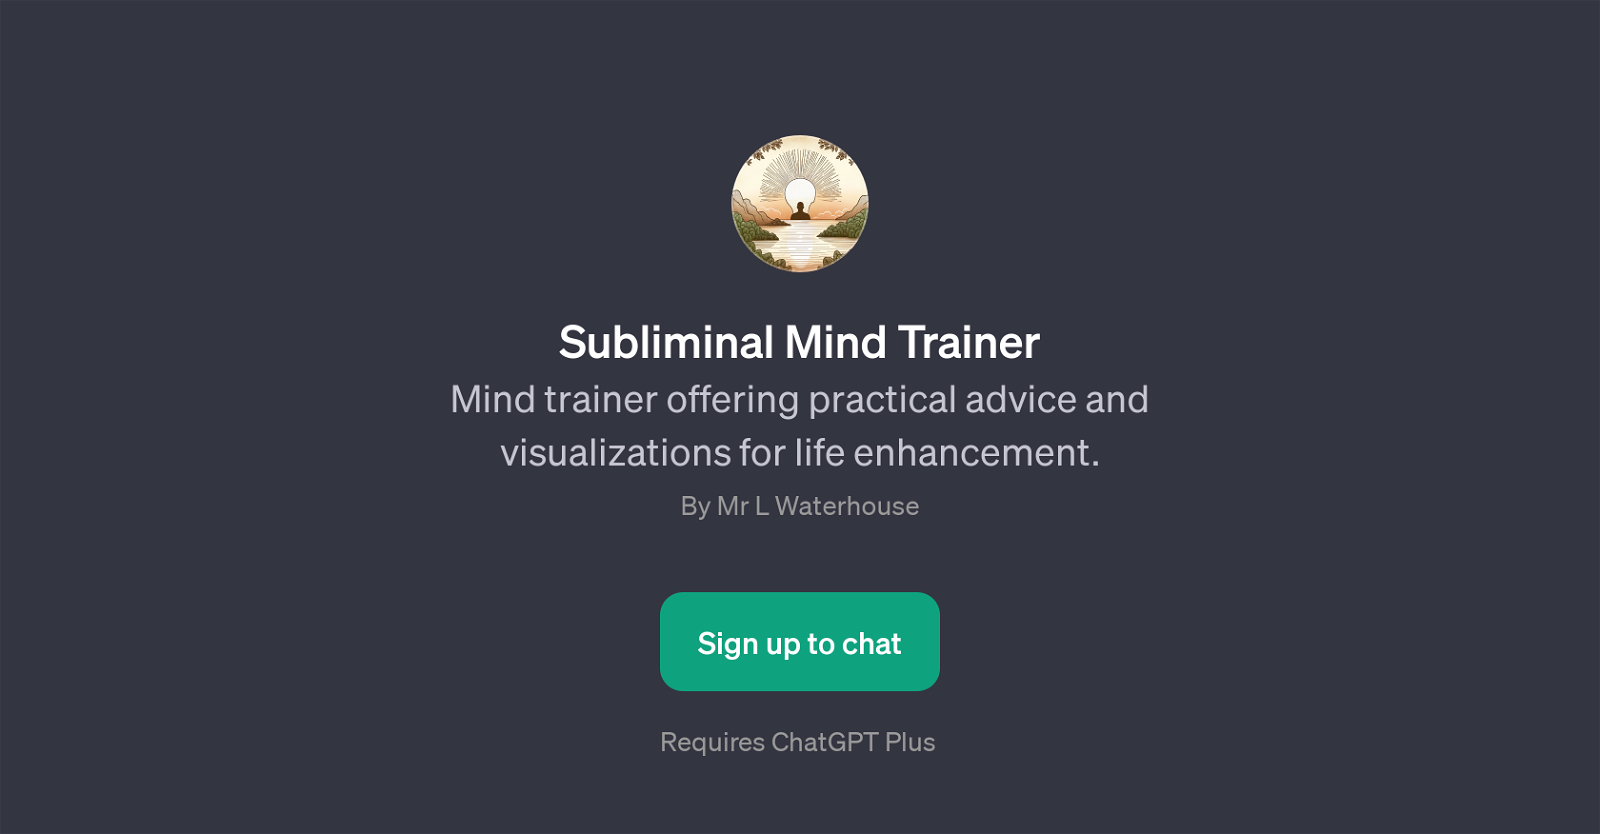 Subliminal Mind Trainer website